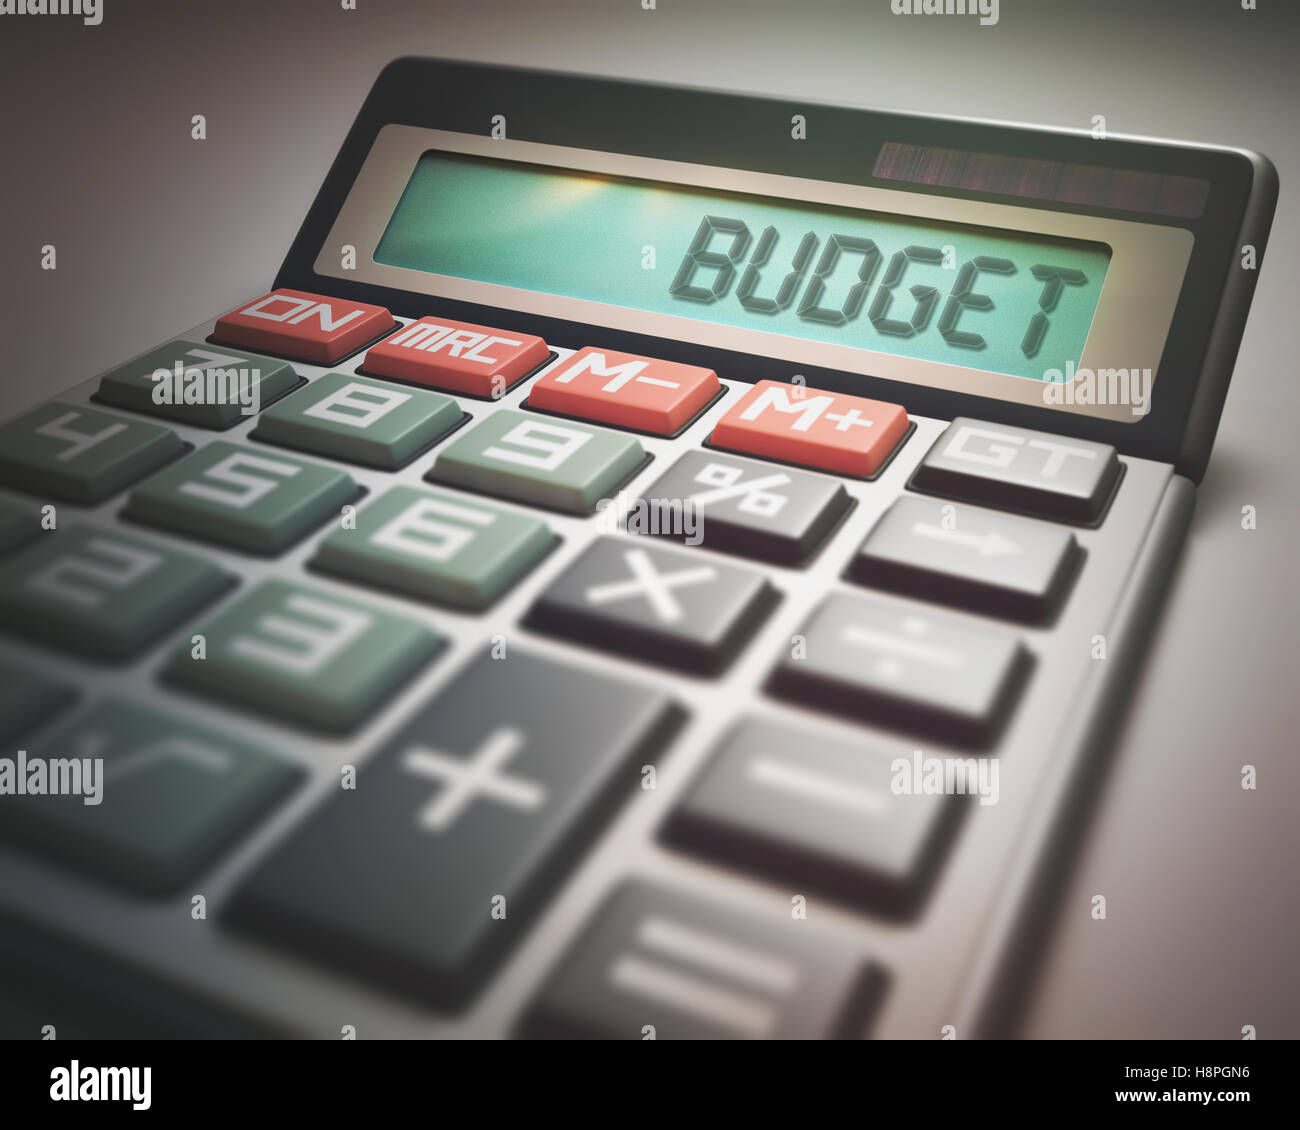 Calculatrice avec le mot budget Banque de photographies et d'images à haute  résolution - Alamy